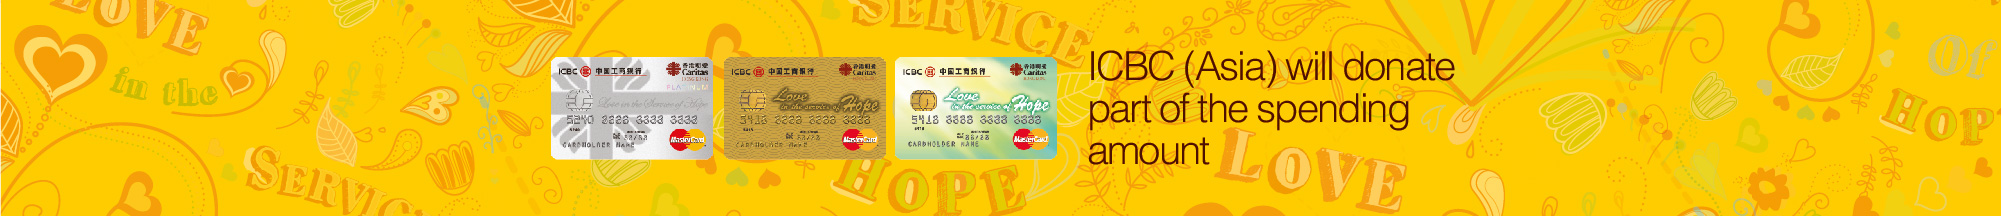 ICBC Caritas-HK MasterCard